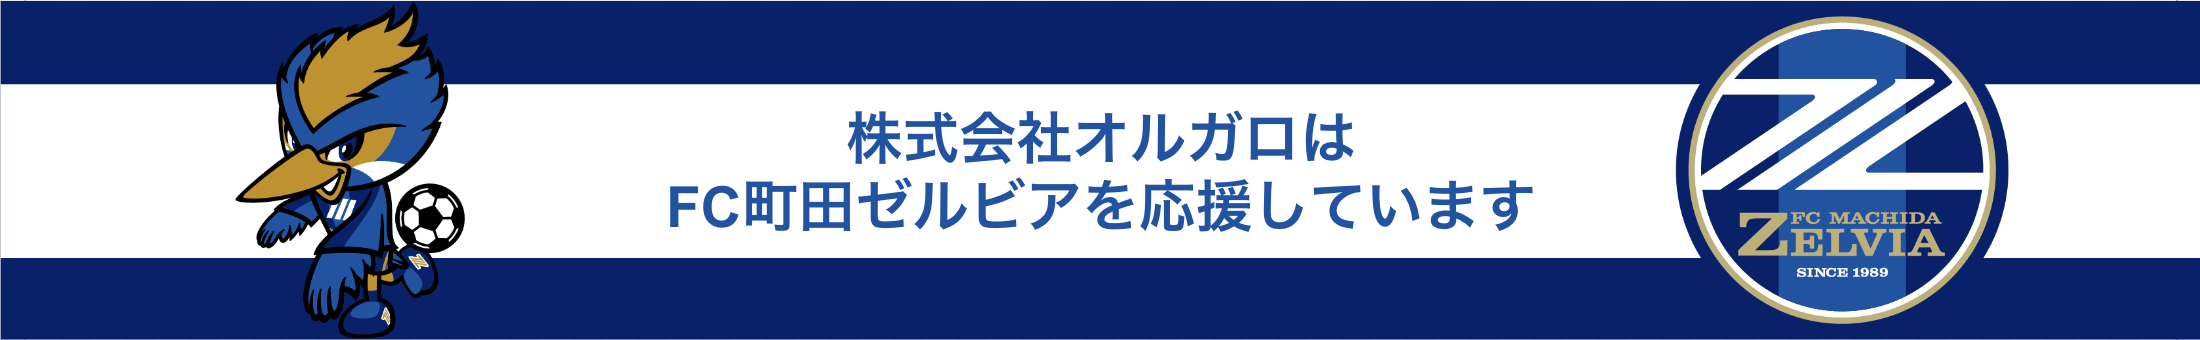 株式会社オルガロはFC町田ゼルビアを応援